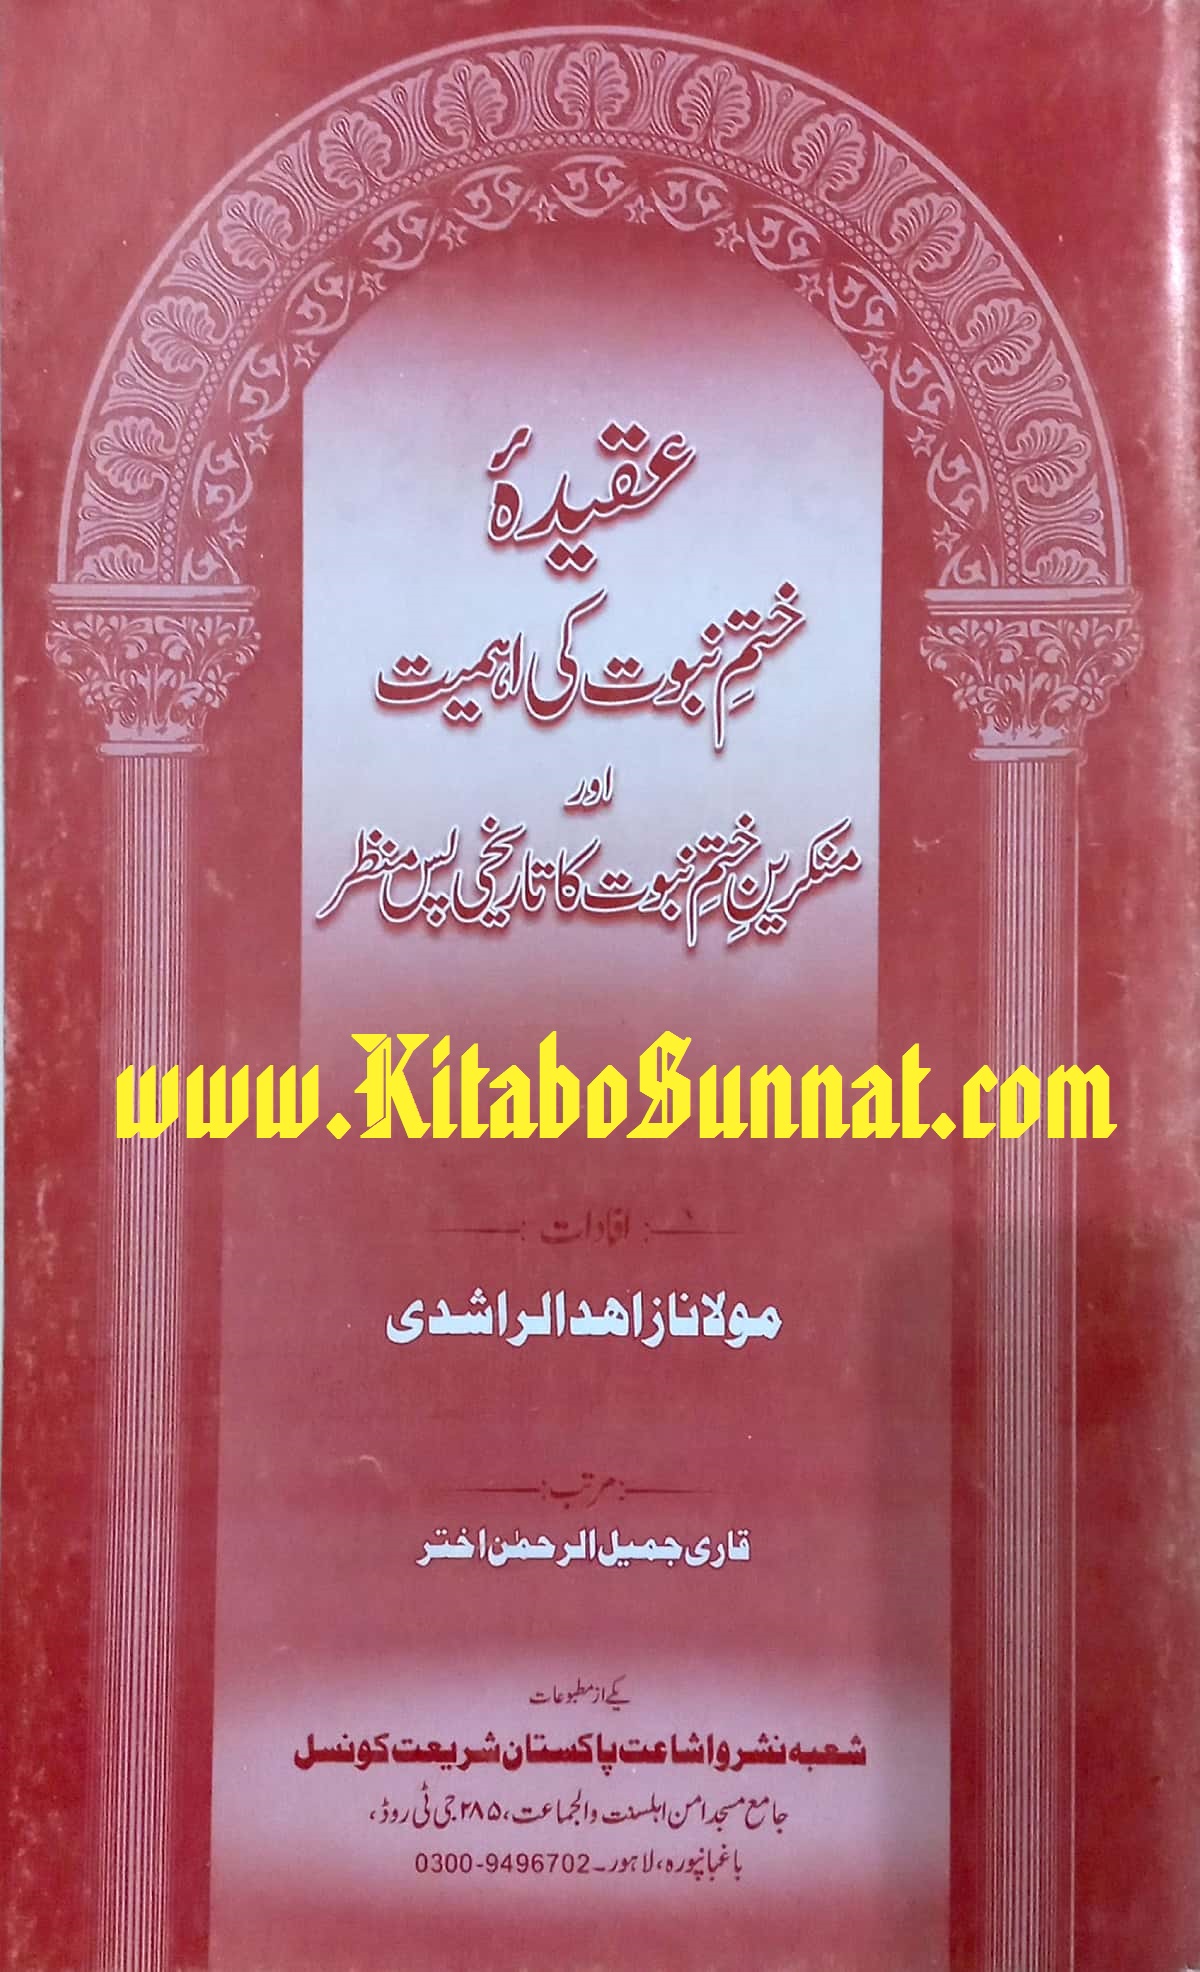 Title Page --- Aqeeda-Khatam-e-Nabowat-Ki-Ahmiyat-Aur-Munkreen-Khatam-e-Nabowat.jpg